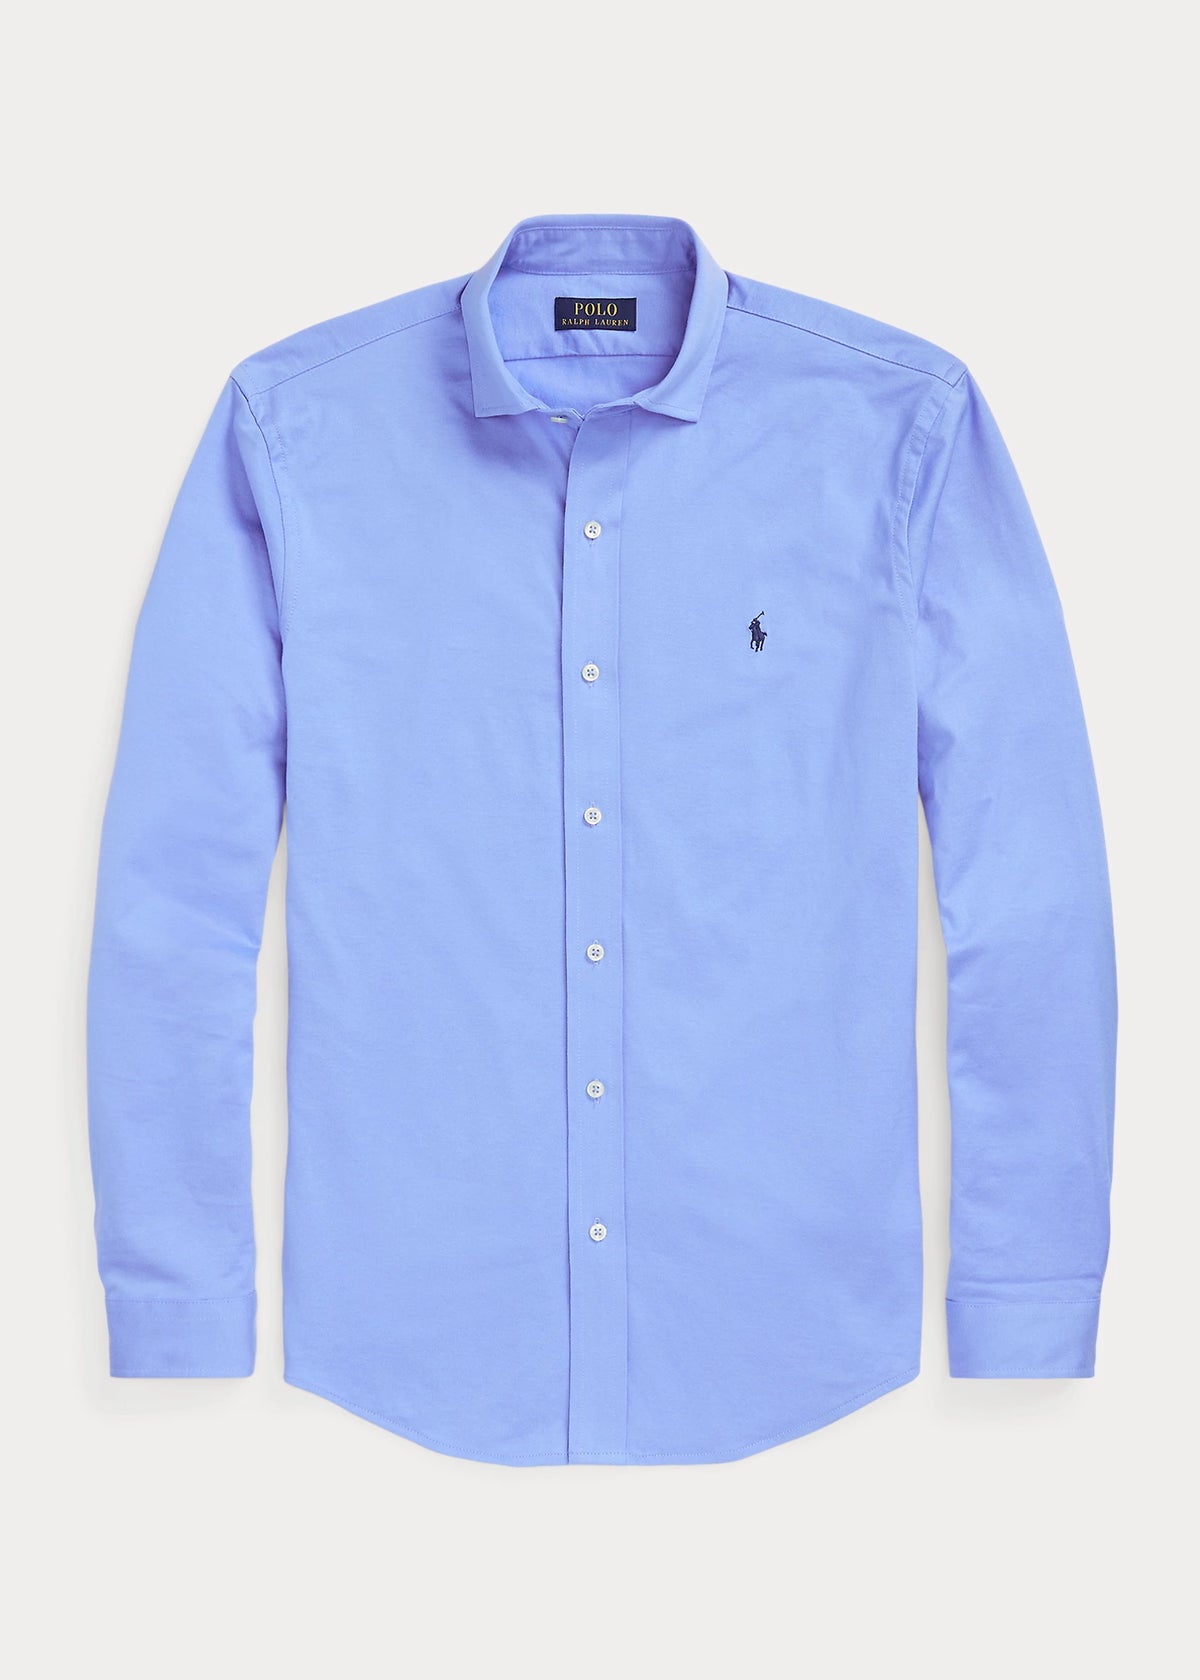 Jersey Shirt - Harbour Blue